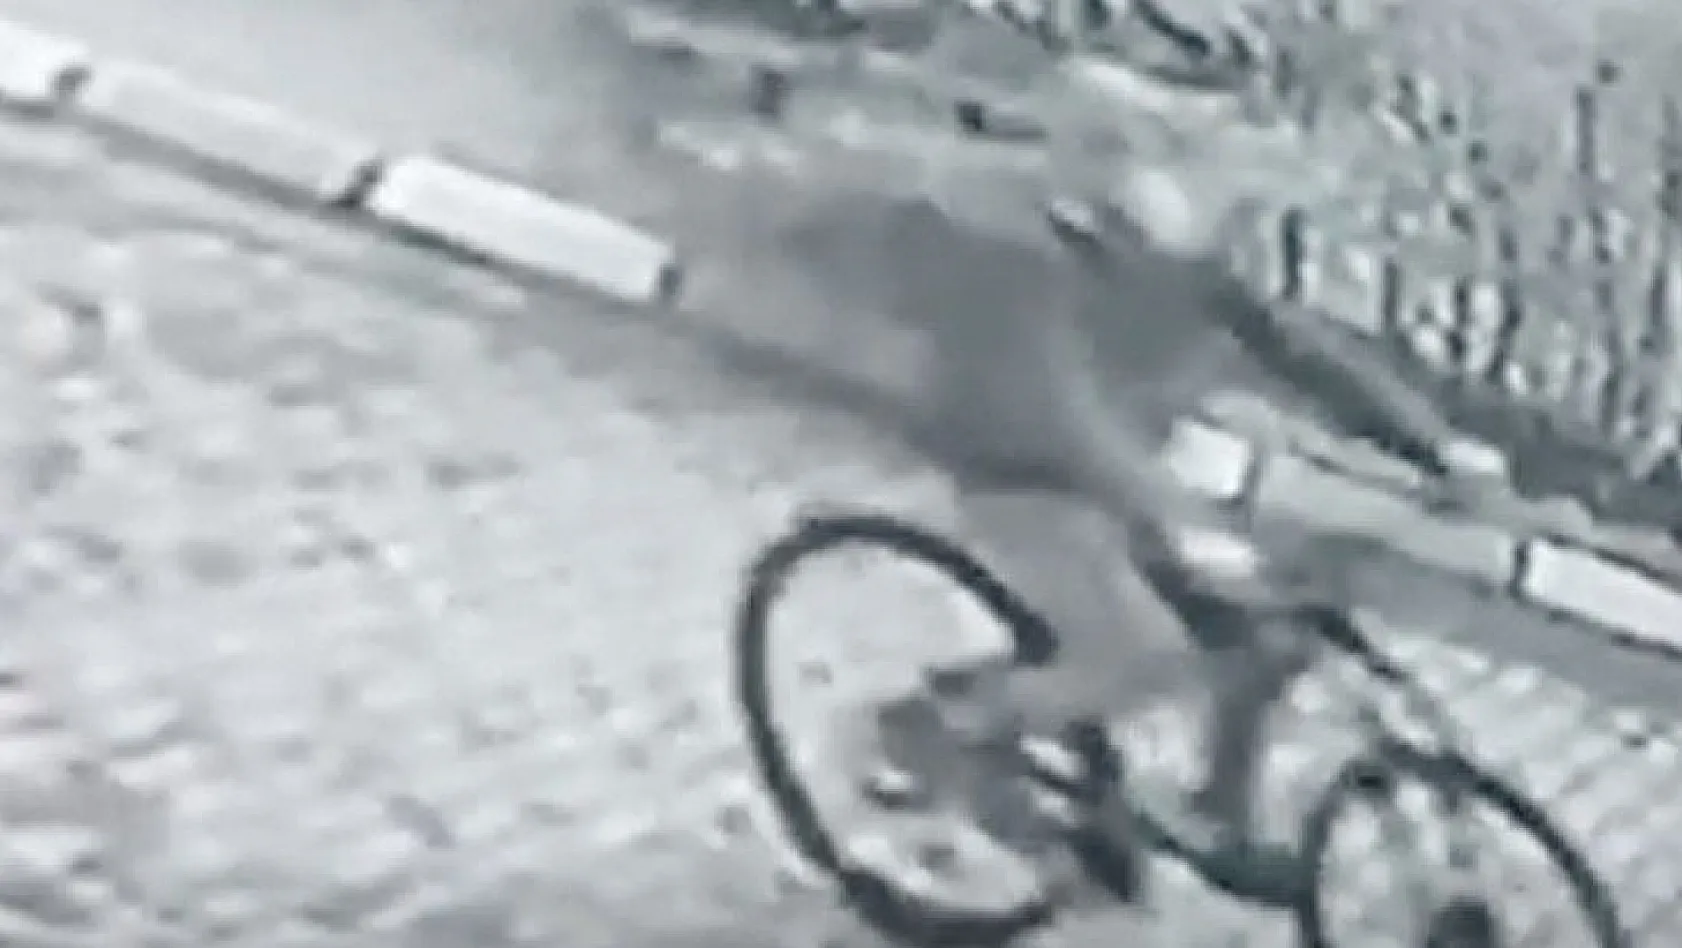 Hırsızın bisikletini çaldığı görüntüleri izleyen genç: 'İlla alacağım demiş'